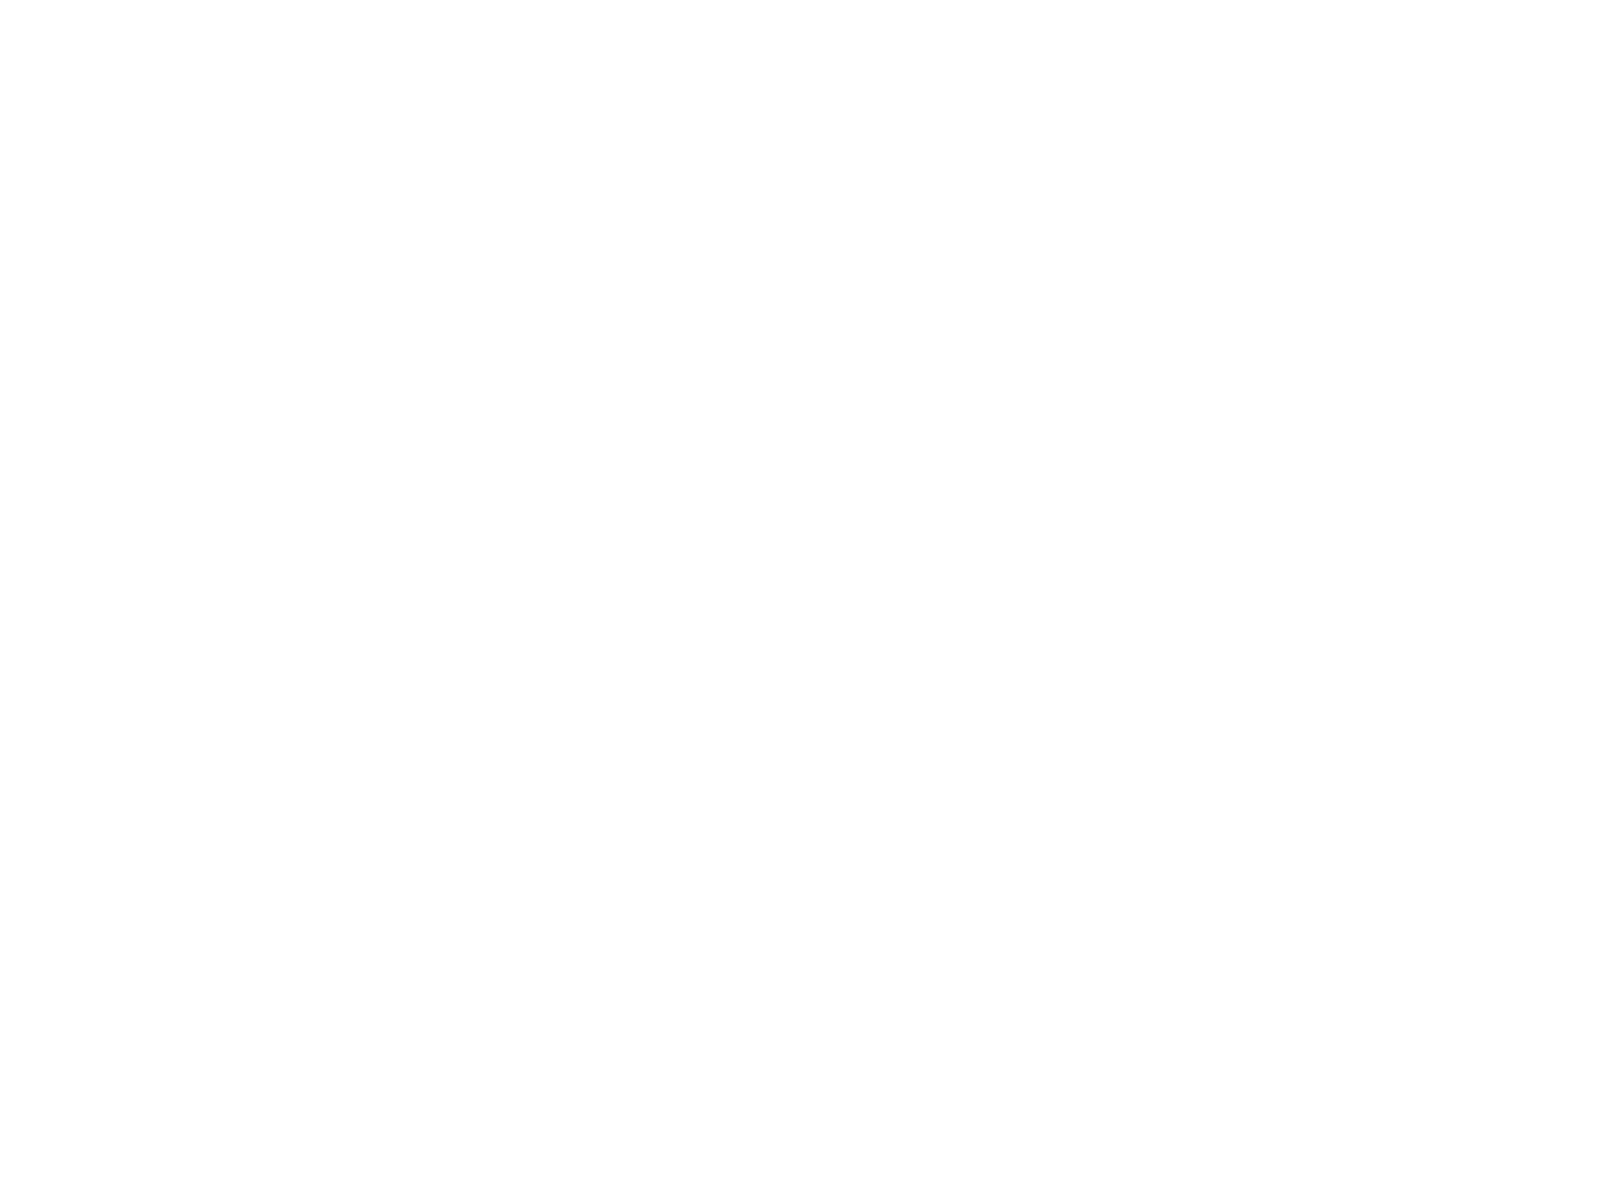 23 АВГУСТА. День разгрома советскими войсками немецко-фашистских войск в Курской битве (1943 год). Детальное изображение